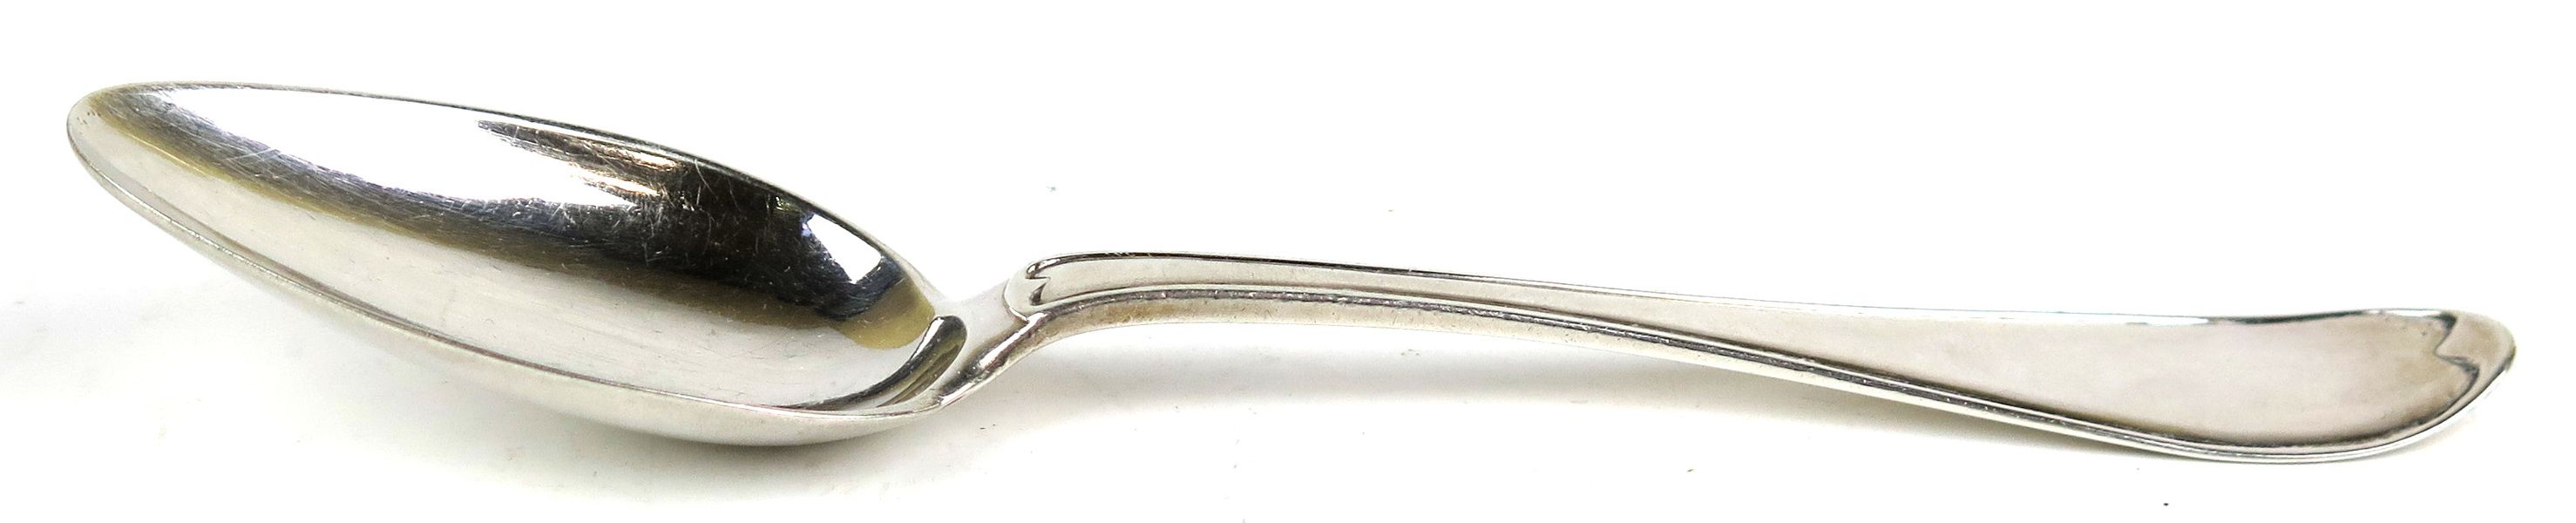 Matsked, silver, svensk modell, 1700-tal, vikt 60 gram_14495a_8d9ab6c32077b0b_lg.jpeg